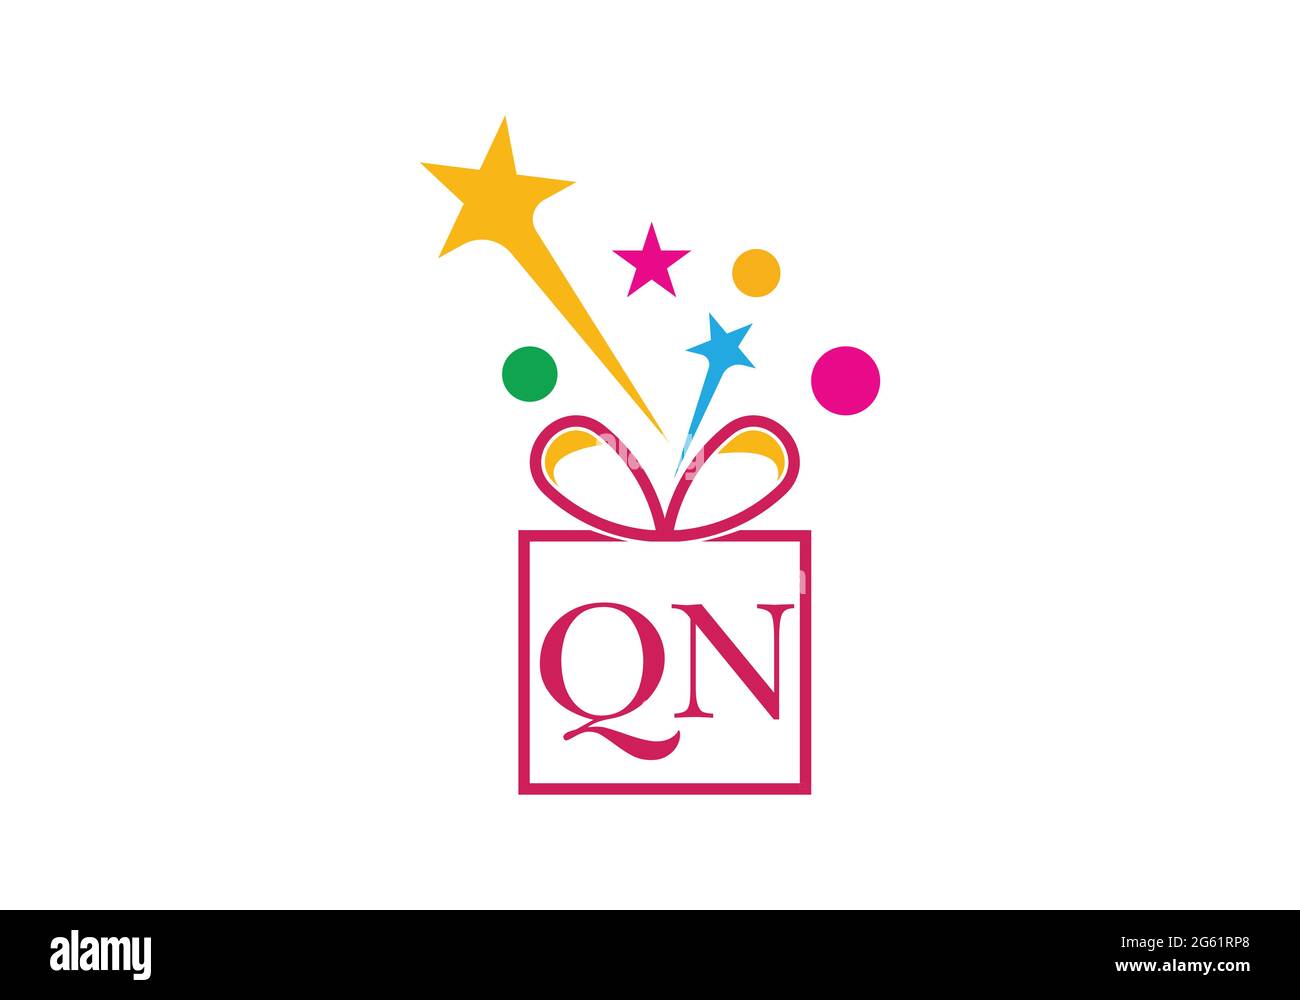 Confezione regalo, lettera alfabetica del negozio di articoli da regalo Q N icona del logo per il design di lusso del marchio per inviti di nozze, biglietti d'auguri, logo e altri design. Illustrazione Vettoriale